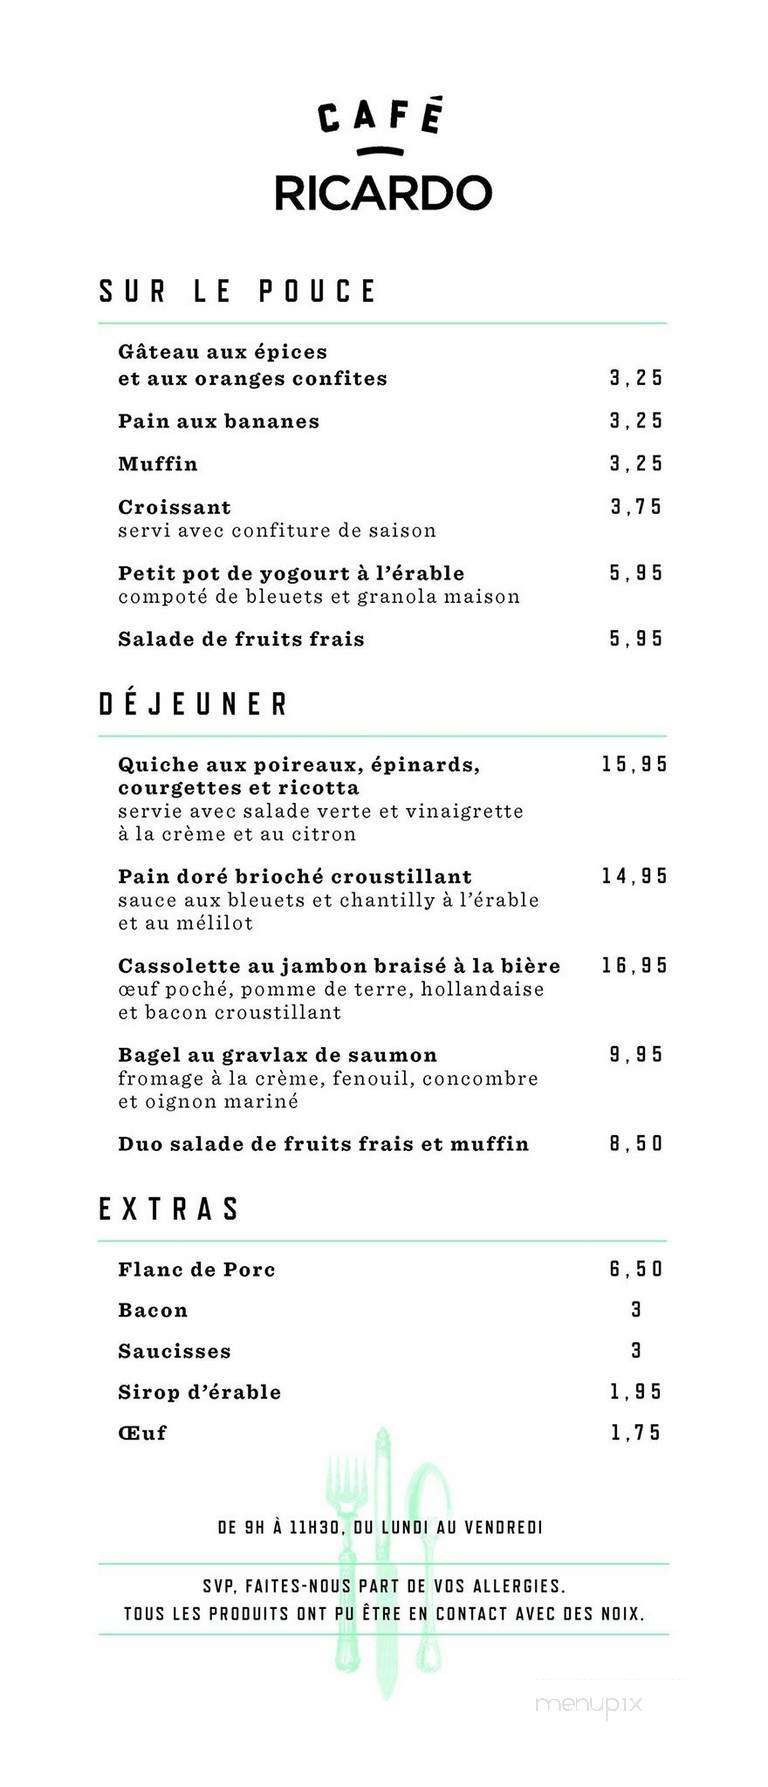 Cafe Ricardo - Saint-Lambert, QC